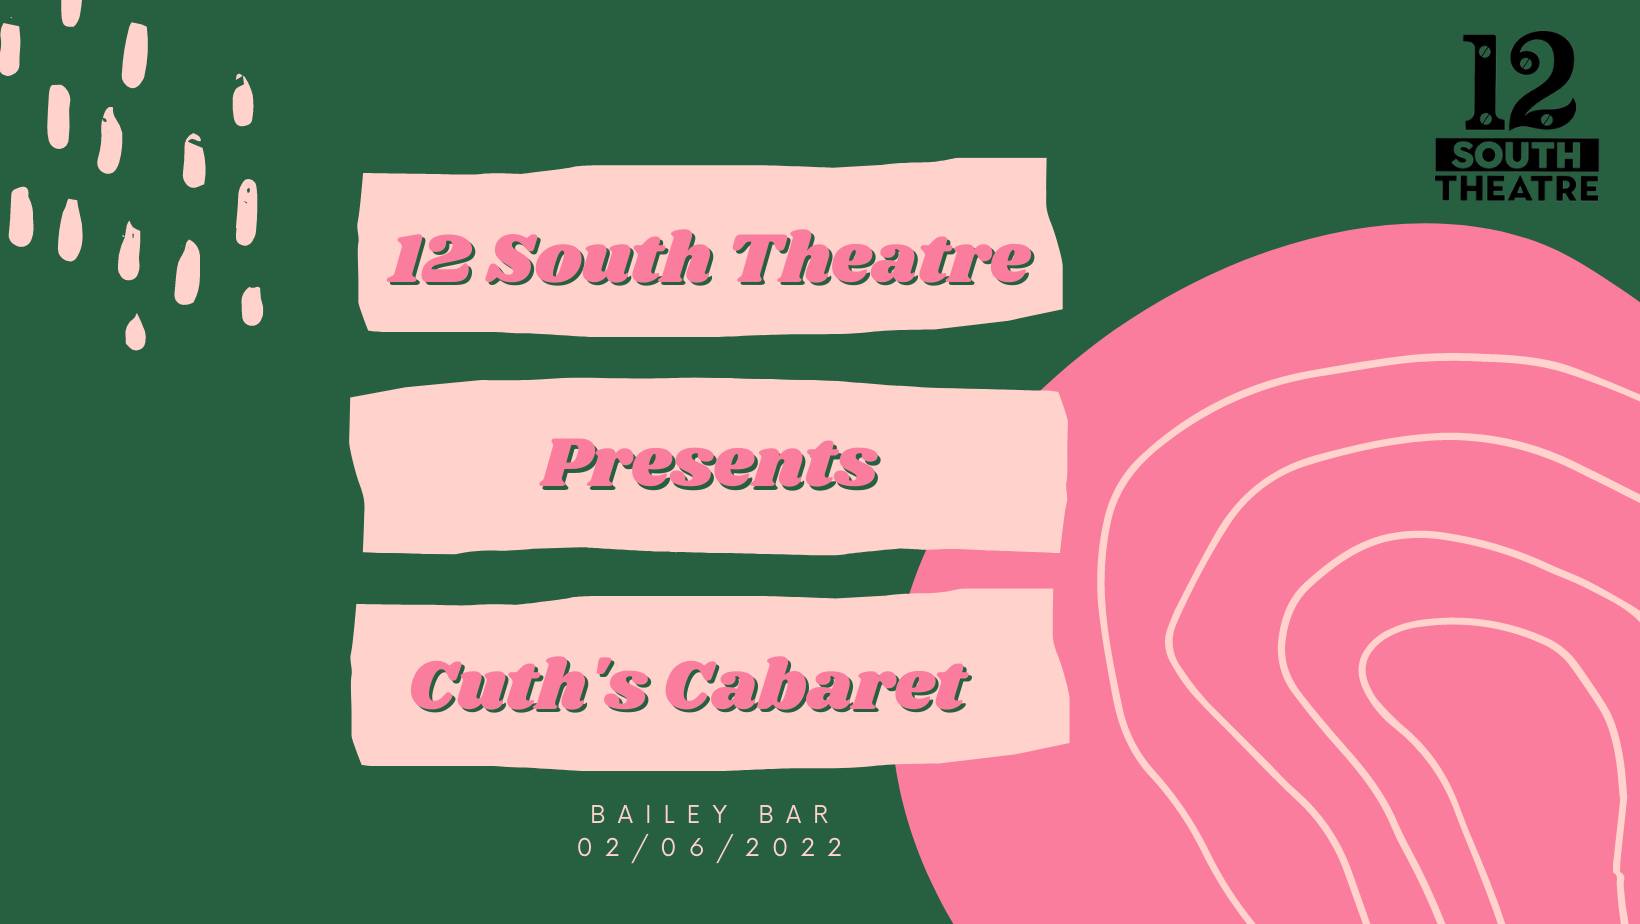 Cuth's Cabaret